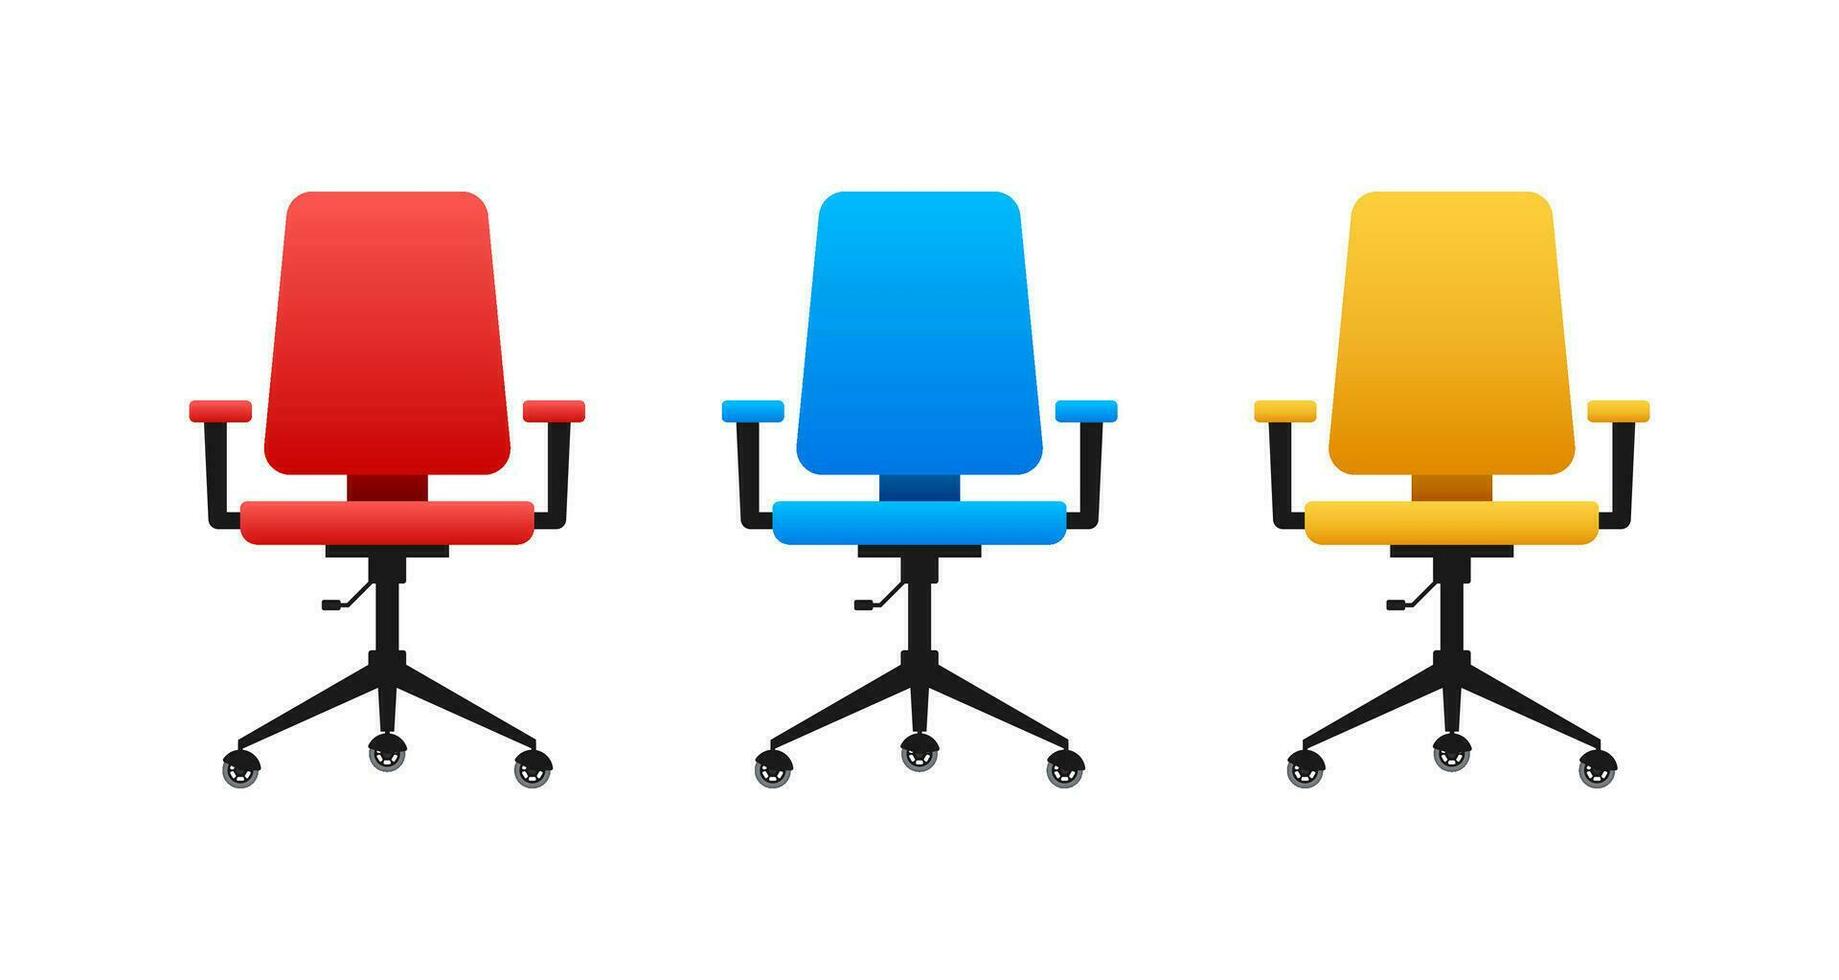 kontor stol eller skrivbord stol. fåtölj. vektor stock illustration.